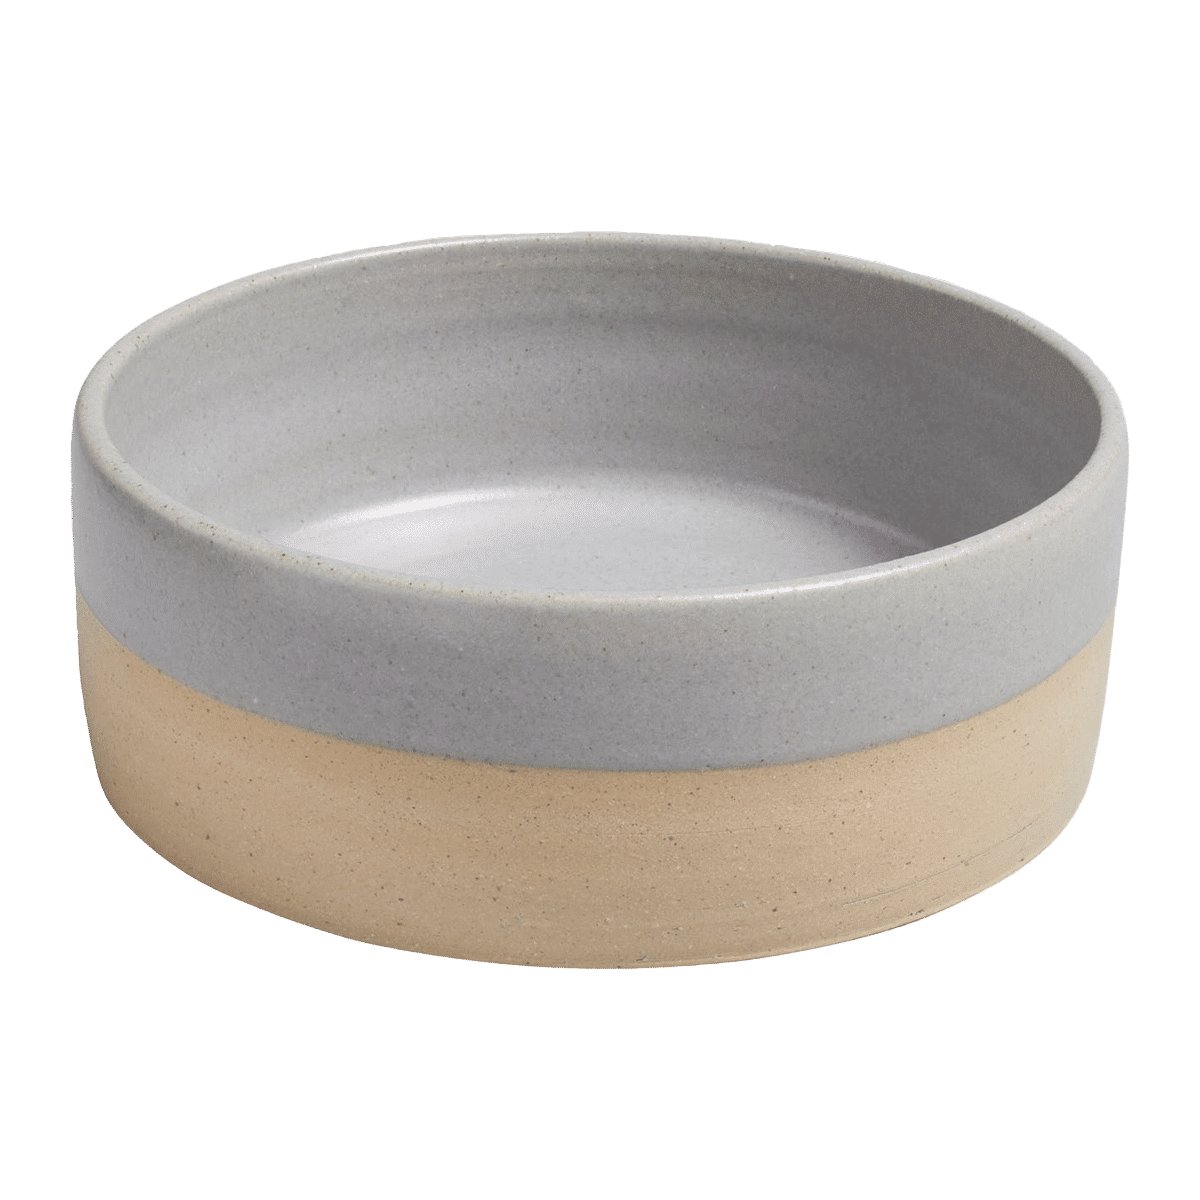 Snygg och stilren hundskål i keramik